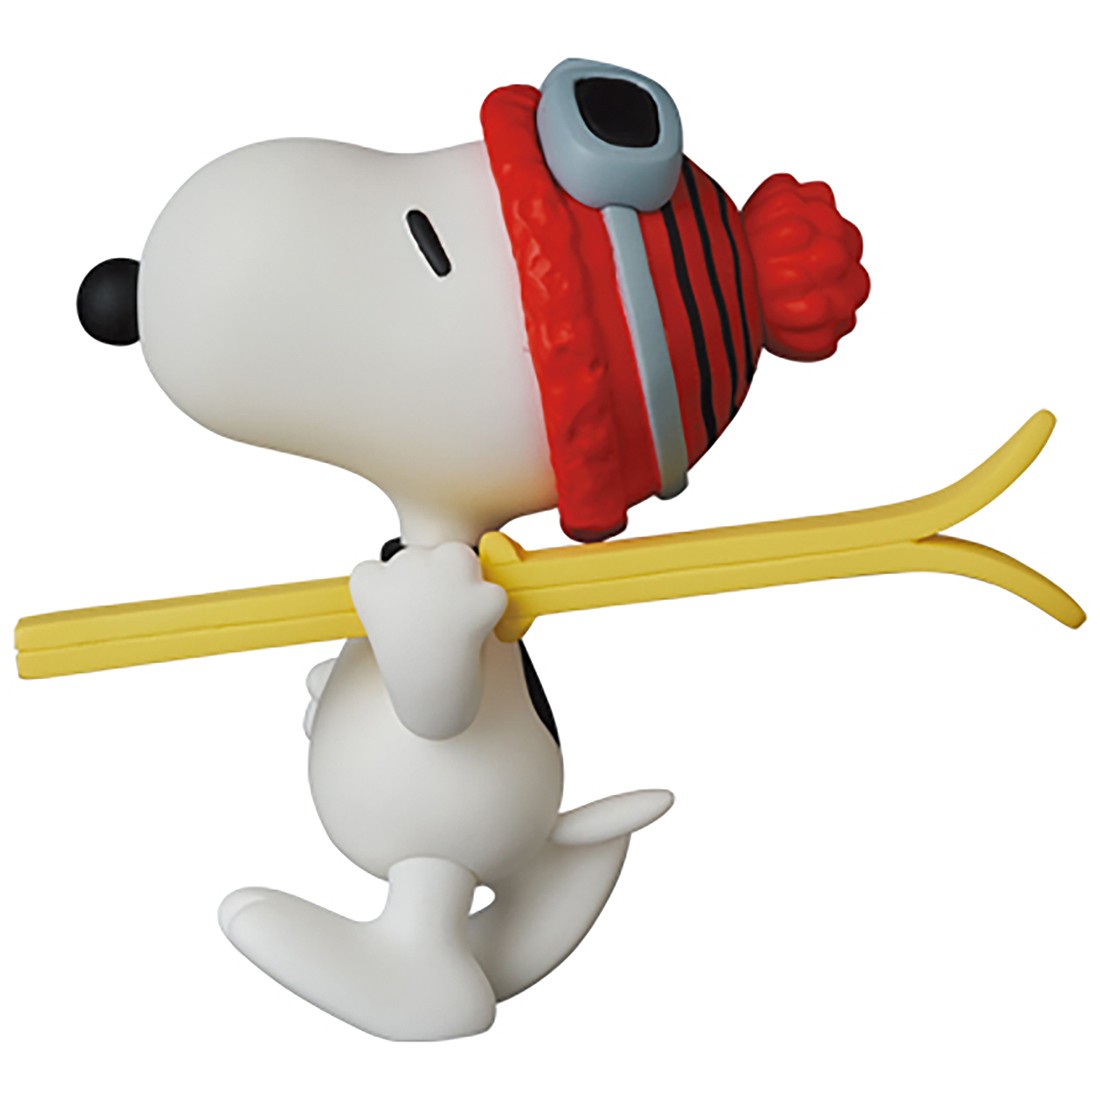 Medicom UDF Peanuts Series 12 Skier Snoopy Figure white